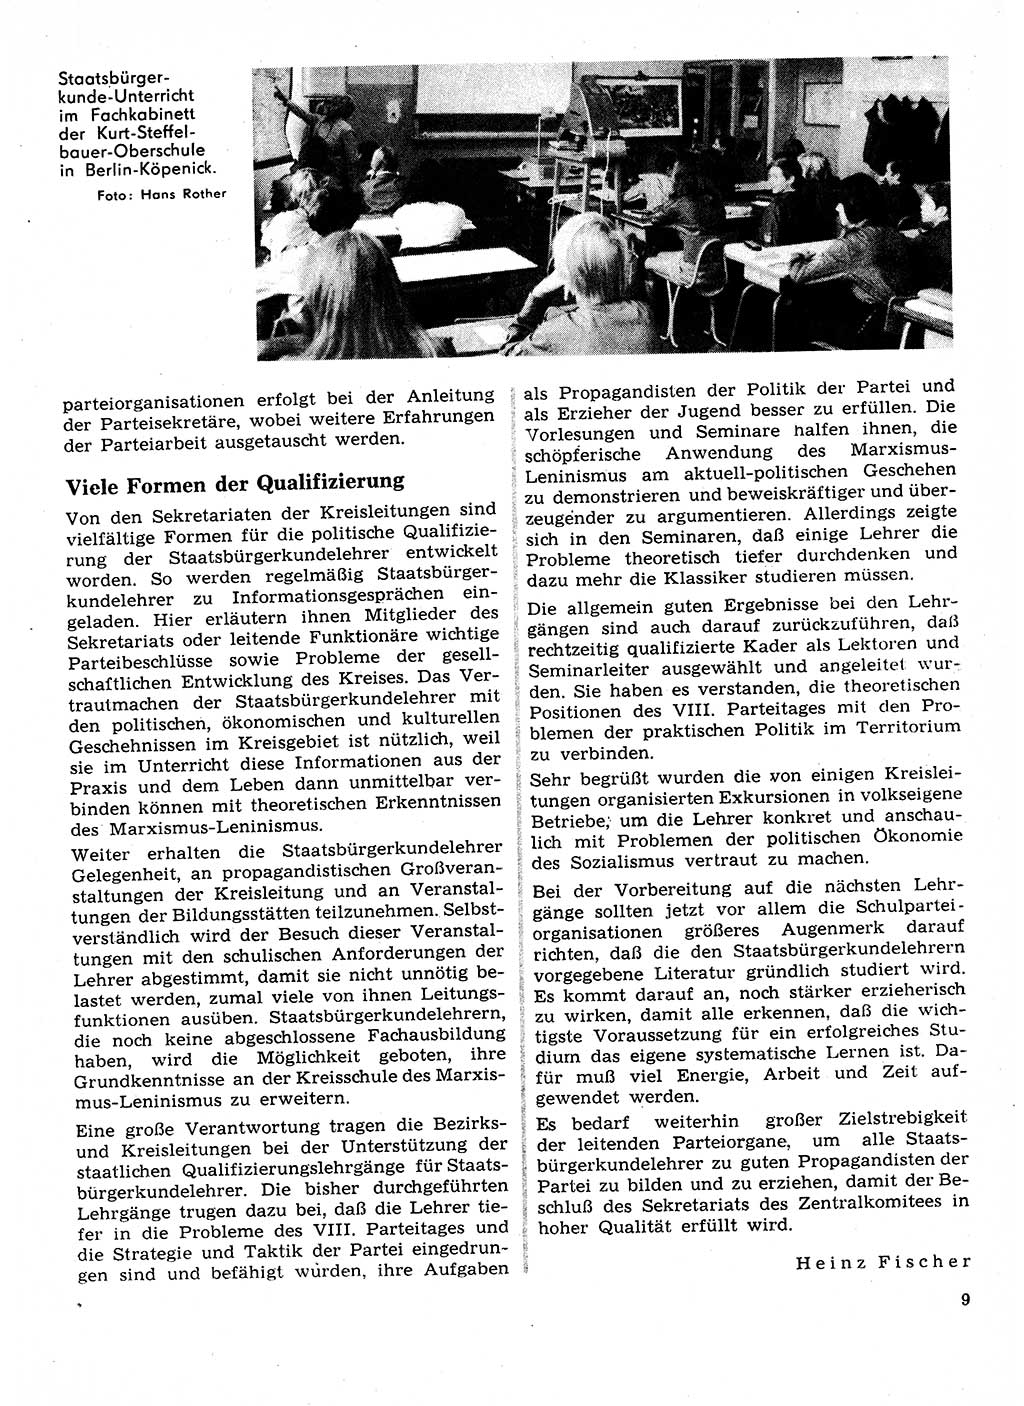 Neuer Weg (NW), Organ des Zentralkomitees (ZK) der SED (Sozialistische Einheitspartei Deutschlands) für Fragen des Parteilebens, 28. Jahrgang [Deutsche Demokratische Republik (DDR)] 1973, Seite 9 (NW ZK SED DDR 1973, S. 9)